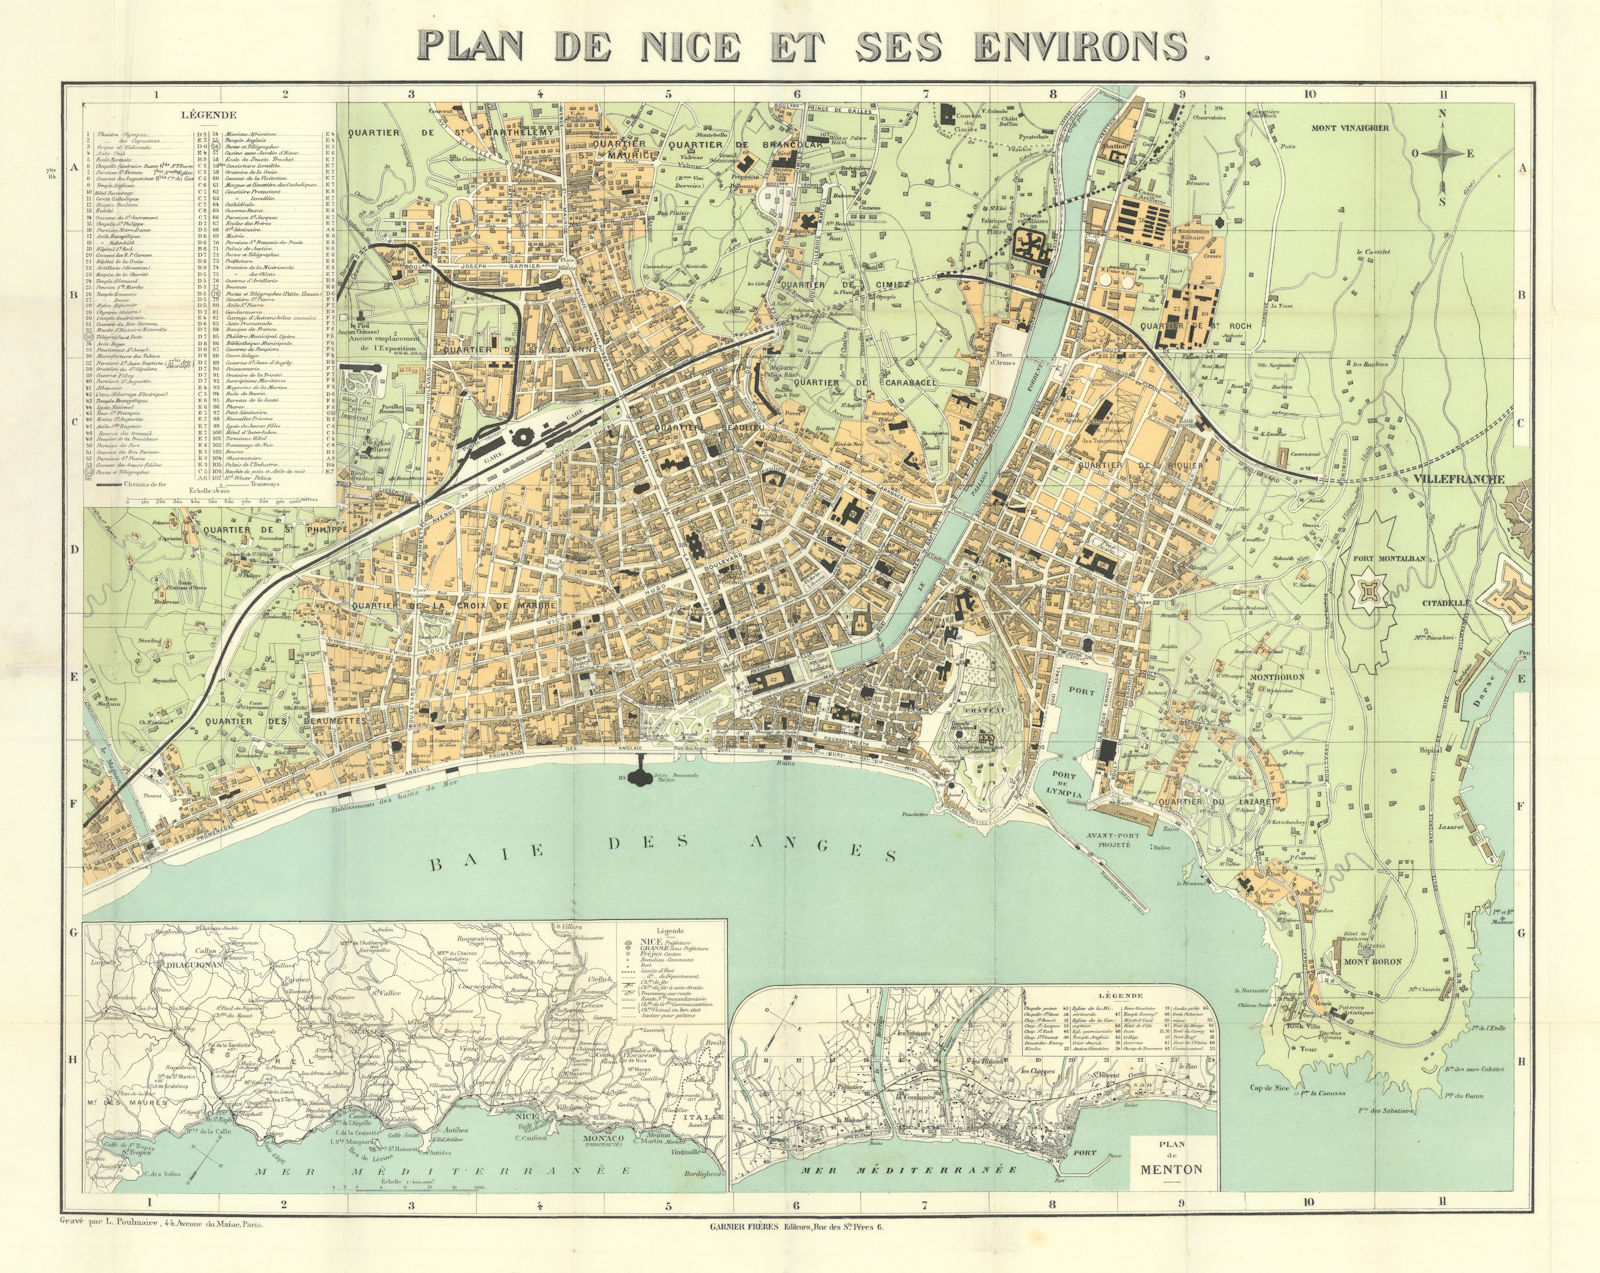 Plan de Nice et ses Environs. City plan by Garnier Frères/Poulmaire c1908 map